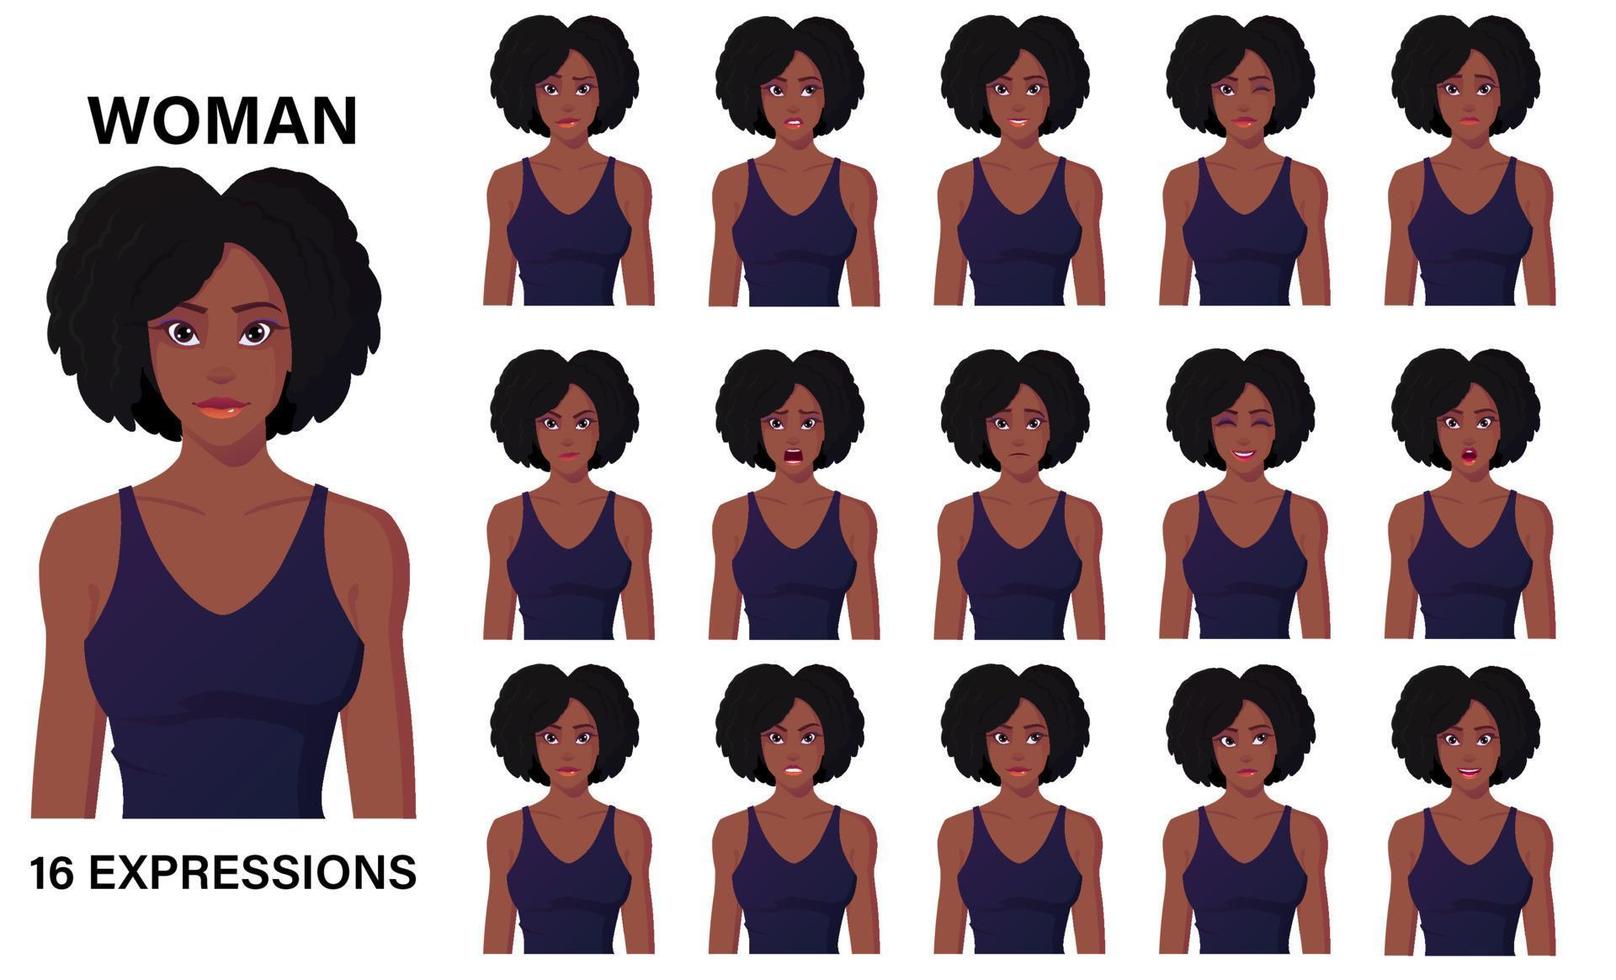 bellissimo personaggio dei cartoni animati di donna nera in abito 16 emozioni ed espressioni facciali vettore premium